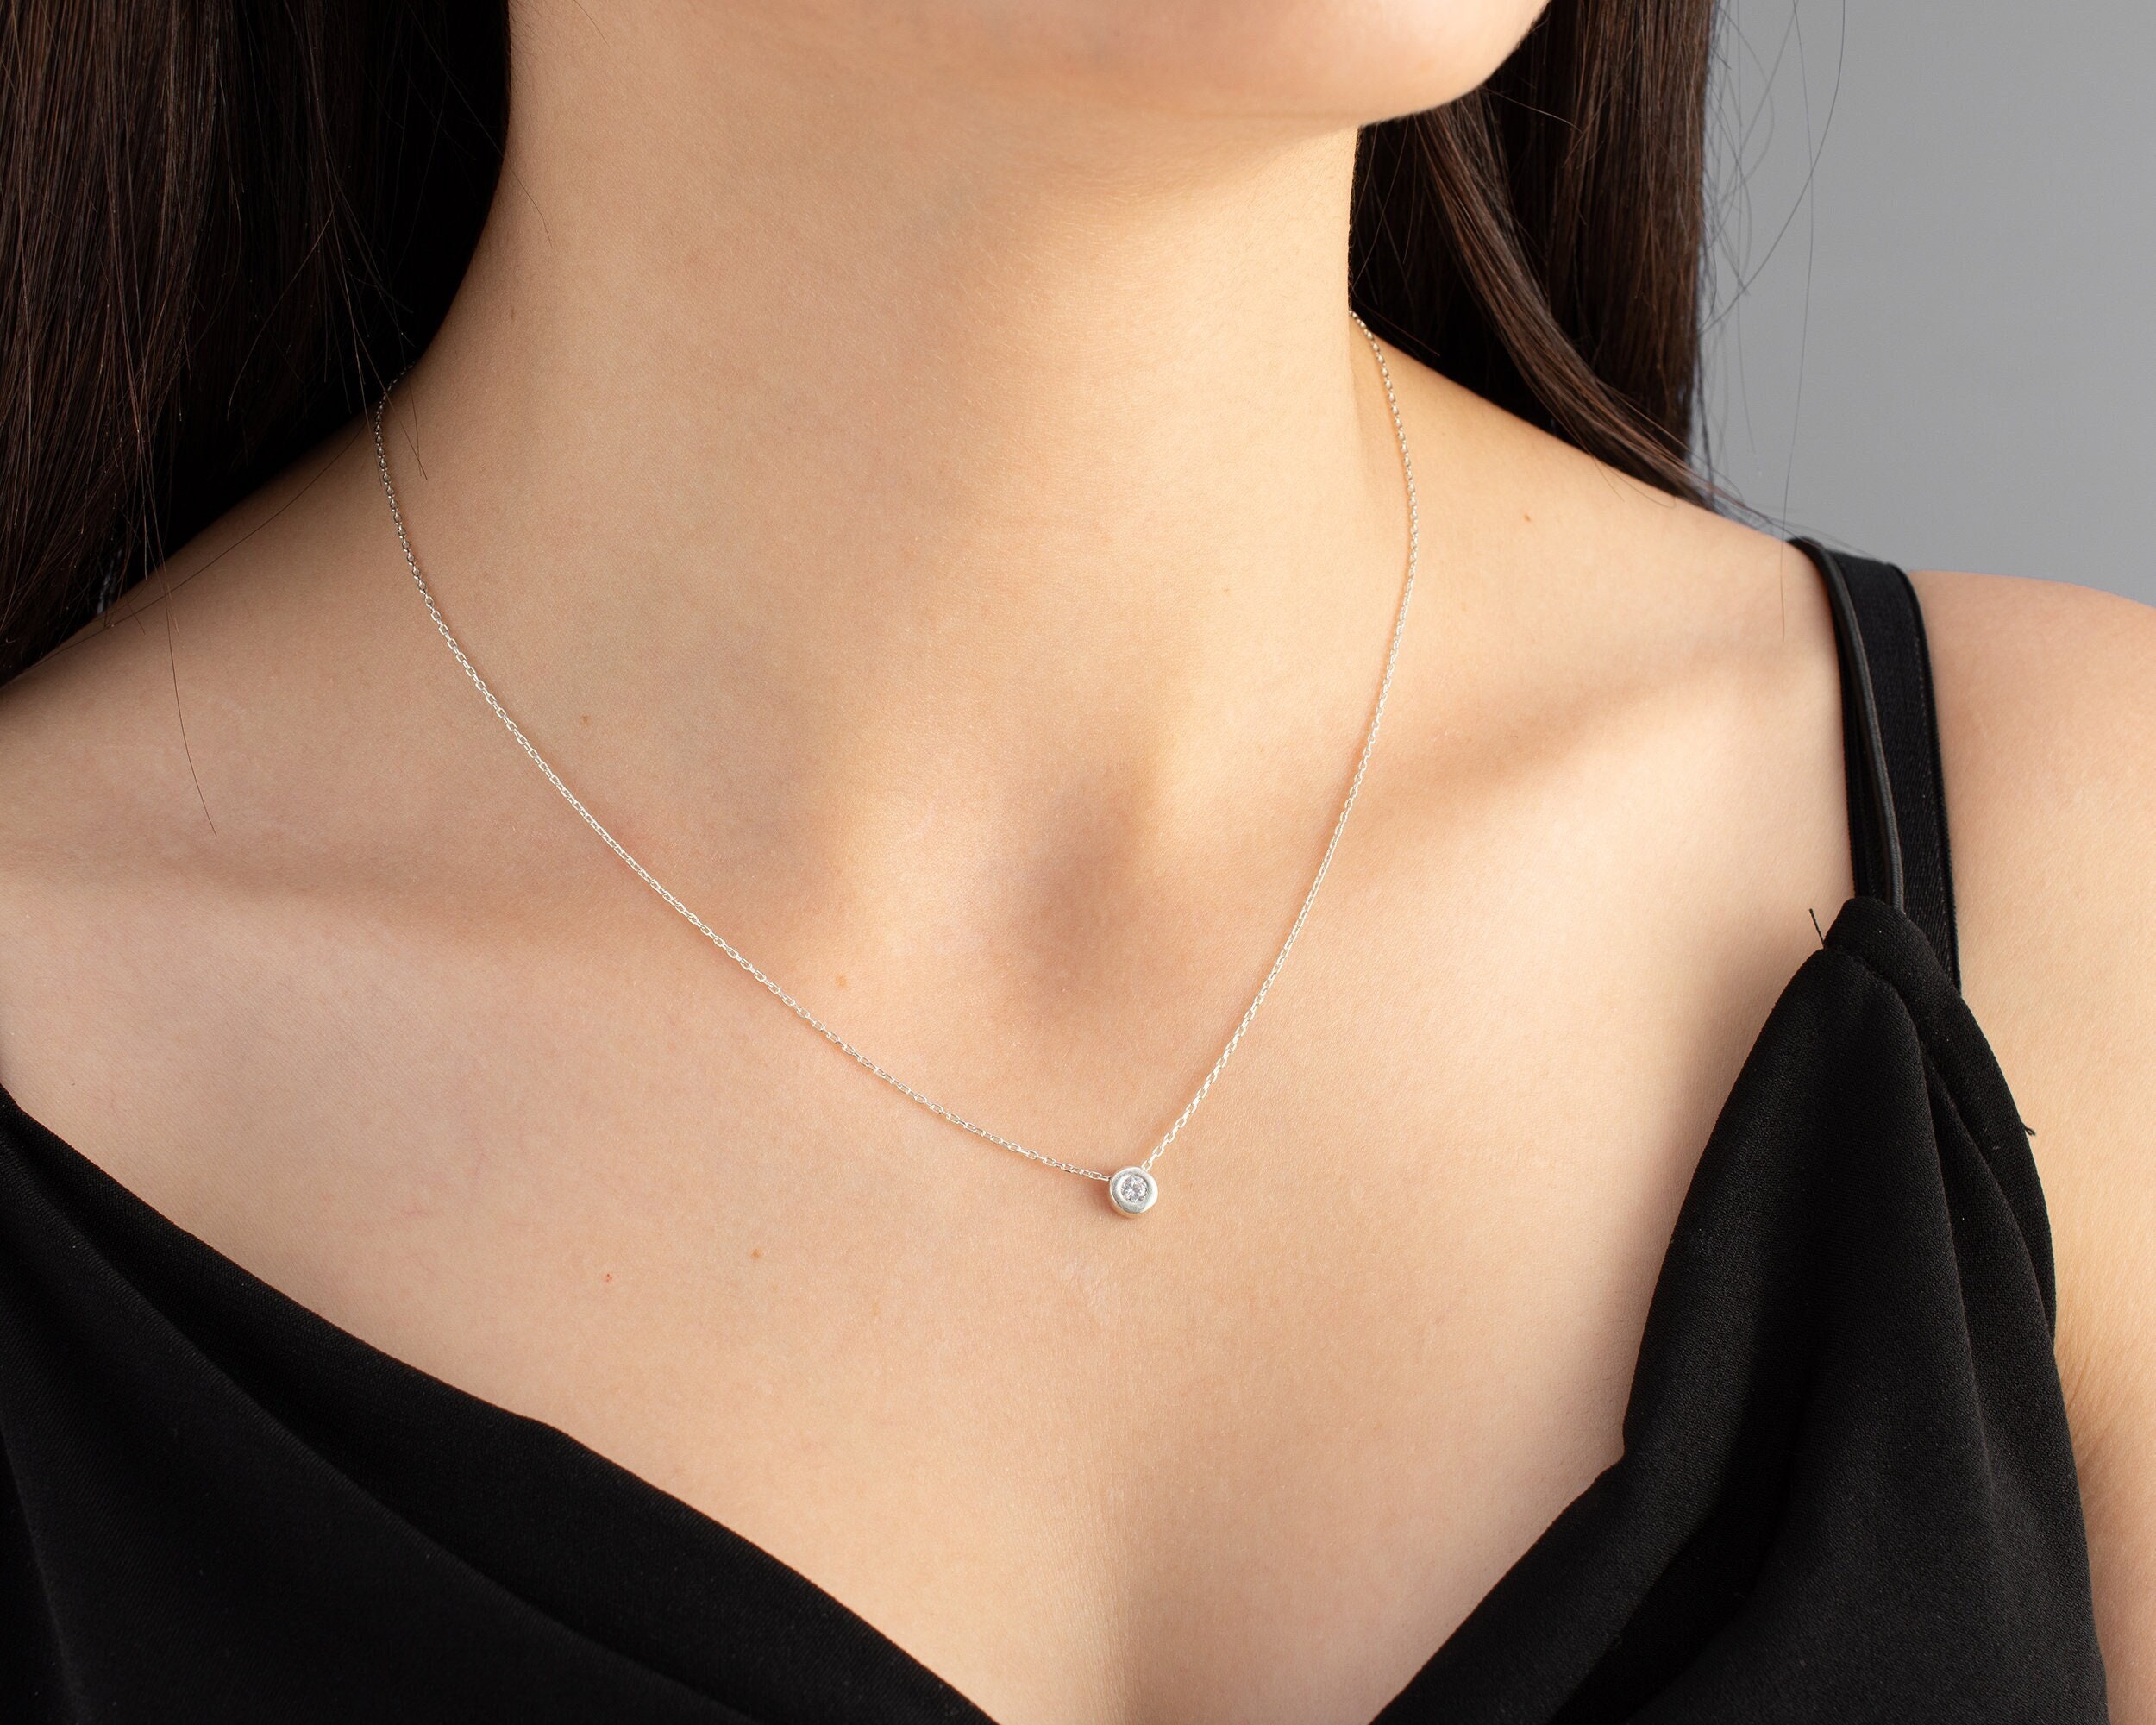 Amazon.com: Tiny Gold Zirconia Necklace - Dainty Bling Necklace - Diamond  Necklace - Choker Necklace - Handmade - Minimalist Jewelry: Clothing, Shoes  & Jewelry